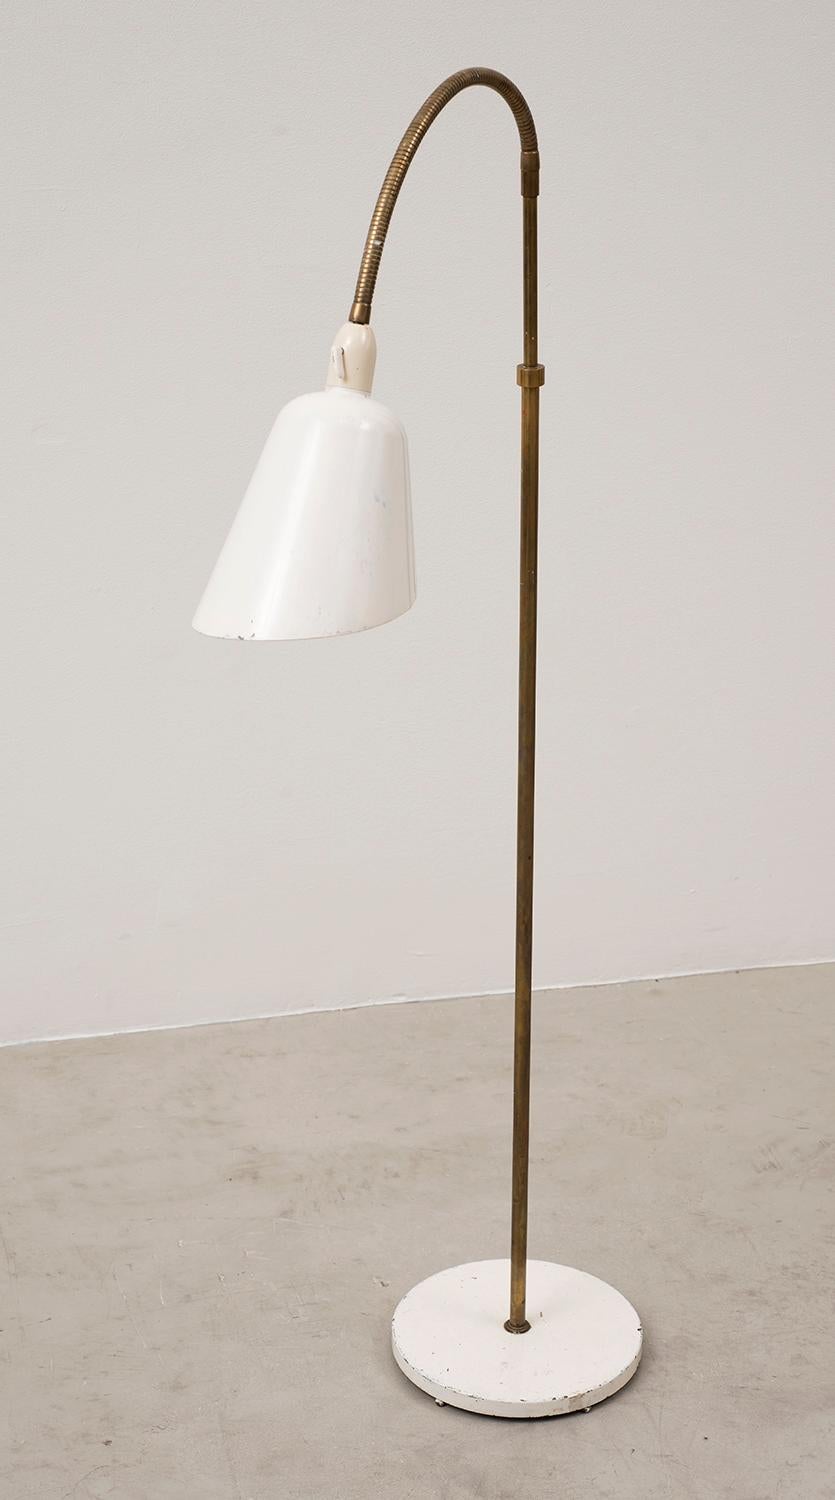 Scandinavian Modern Arne Jacobsen Early Floor Lamp for Louis Poulsen, Denmark, 1929